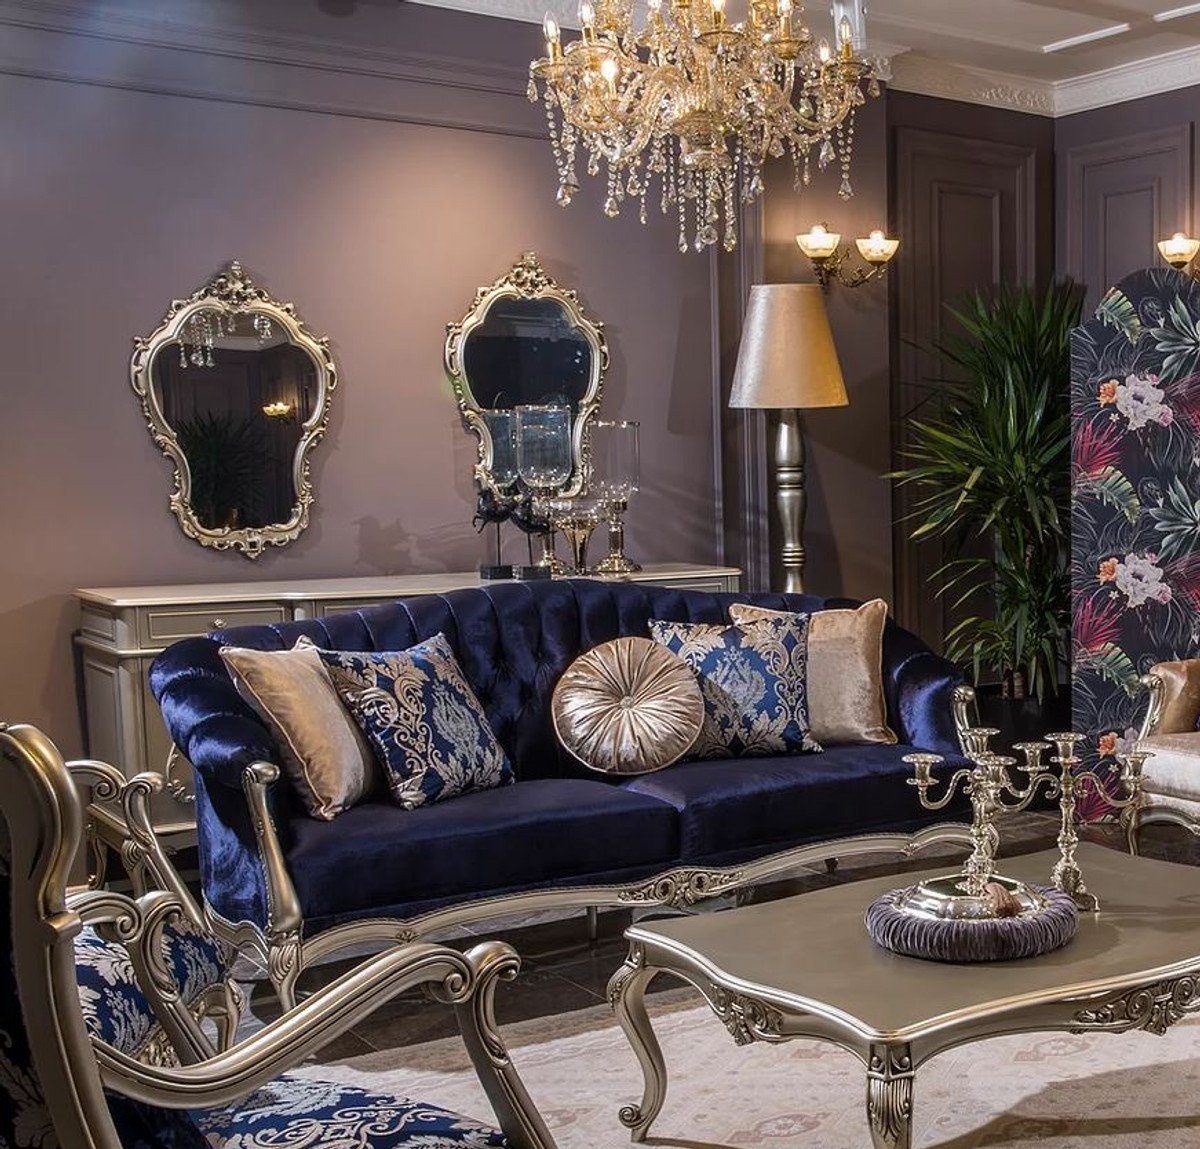 Casa Padrino Sofa Luxus Barock Wohnzimmer Sofa mit dekorativen Kissen Blau / Silber 212 x 80 x H. 98 cm - Prunkvolle Barock Möbel